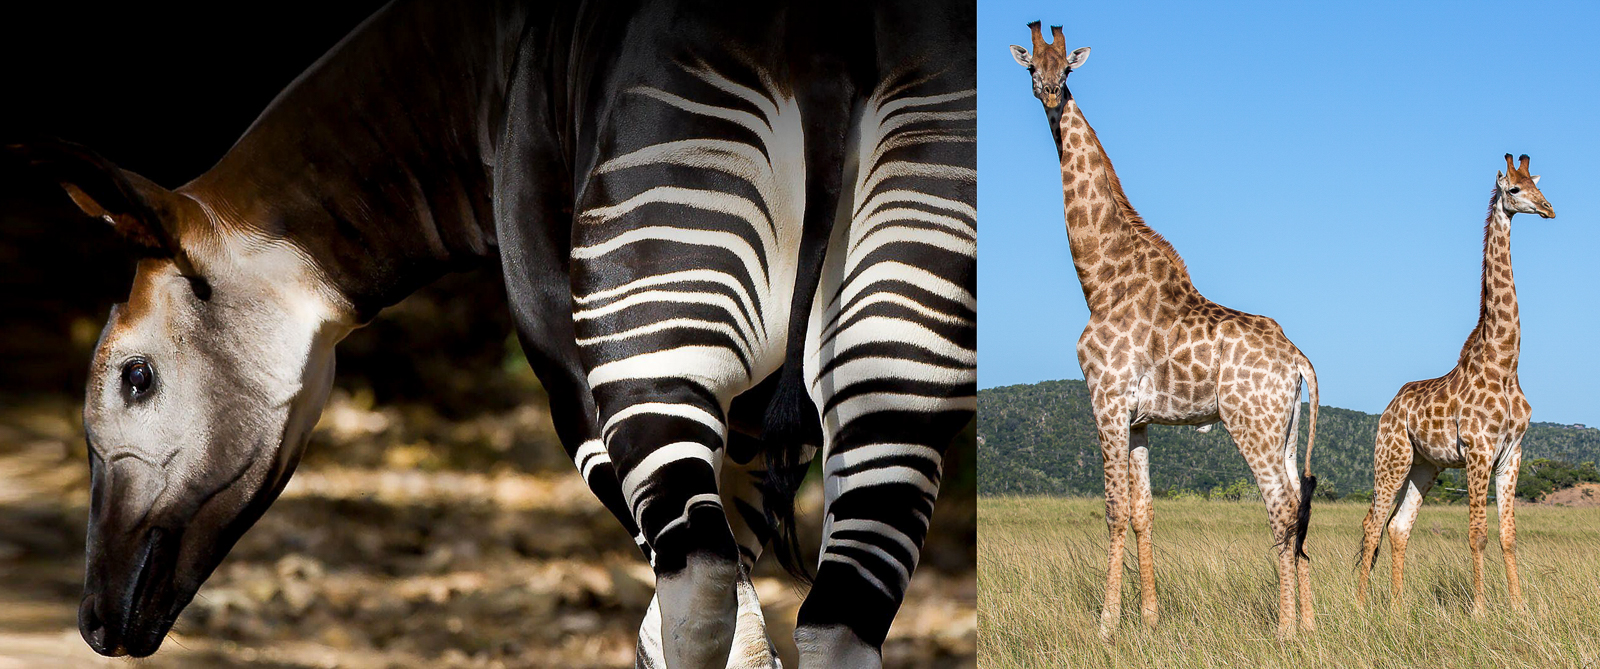 Okapi and Giraffe: Iconic African Animals